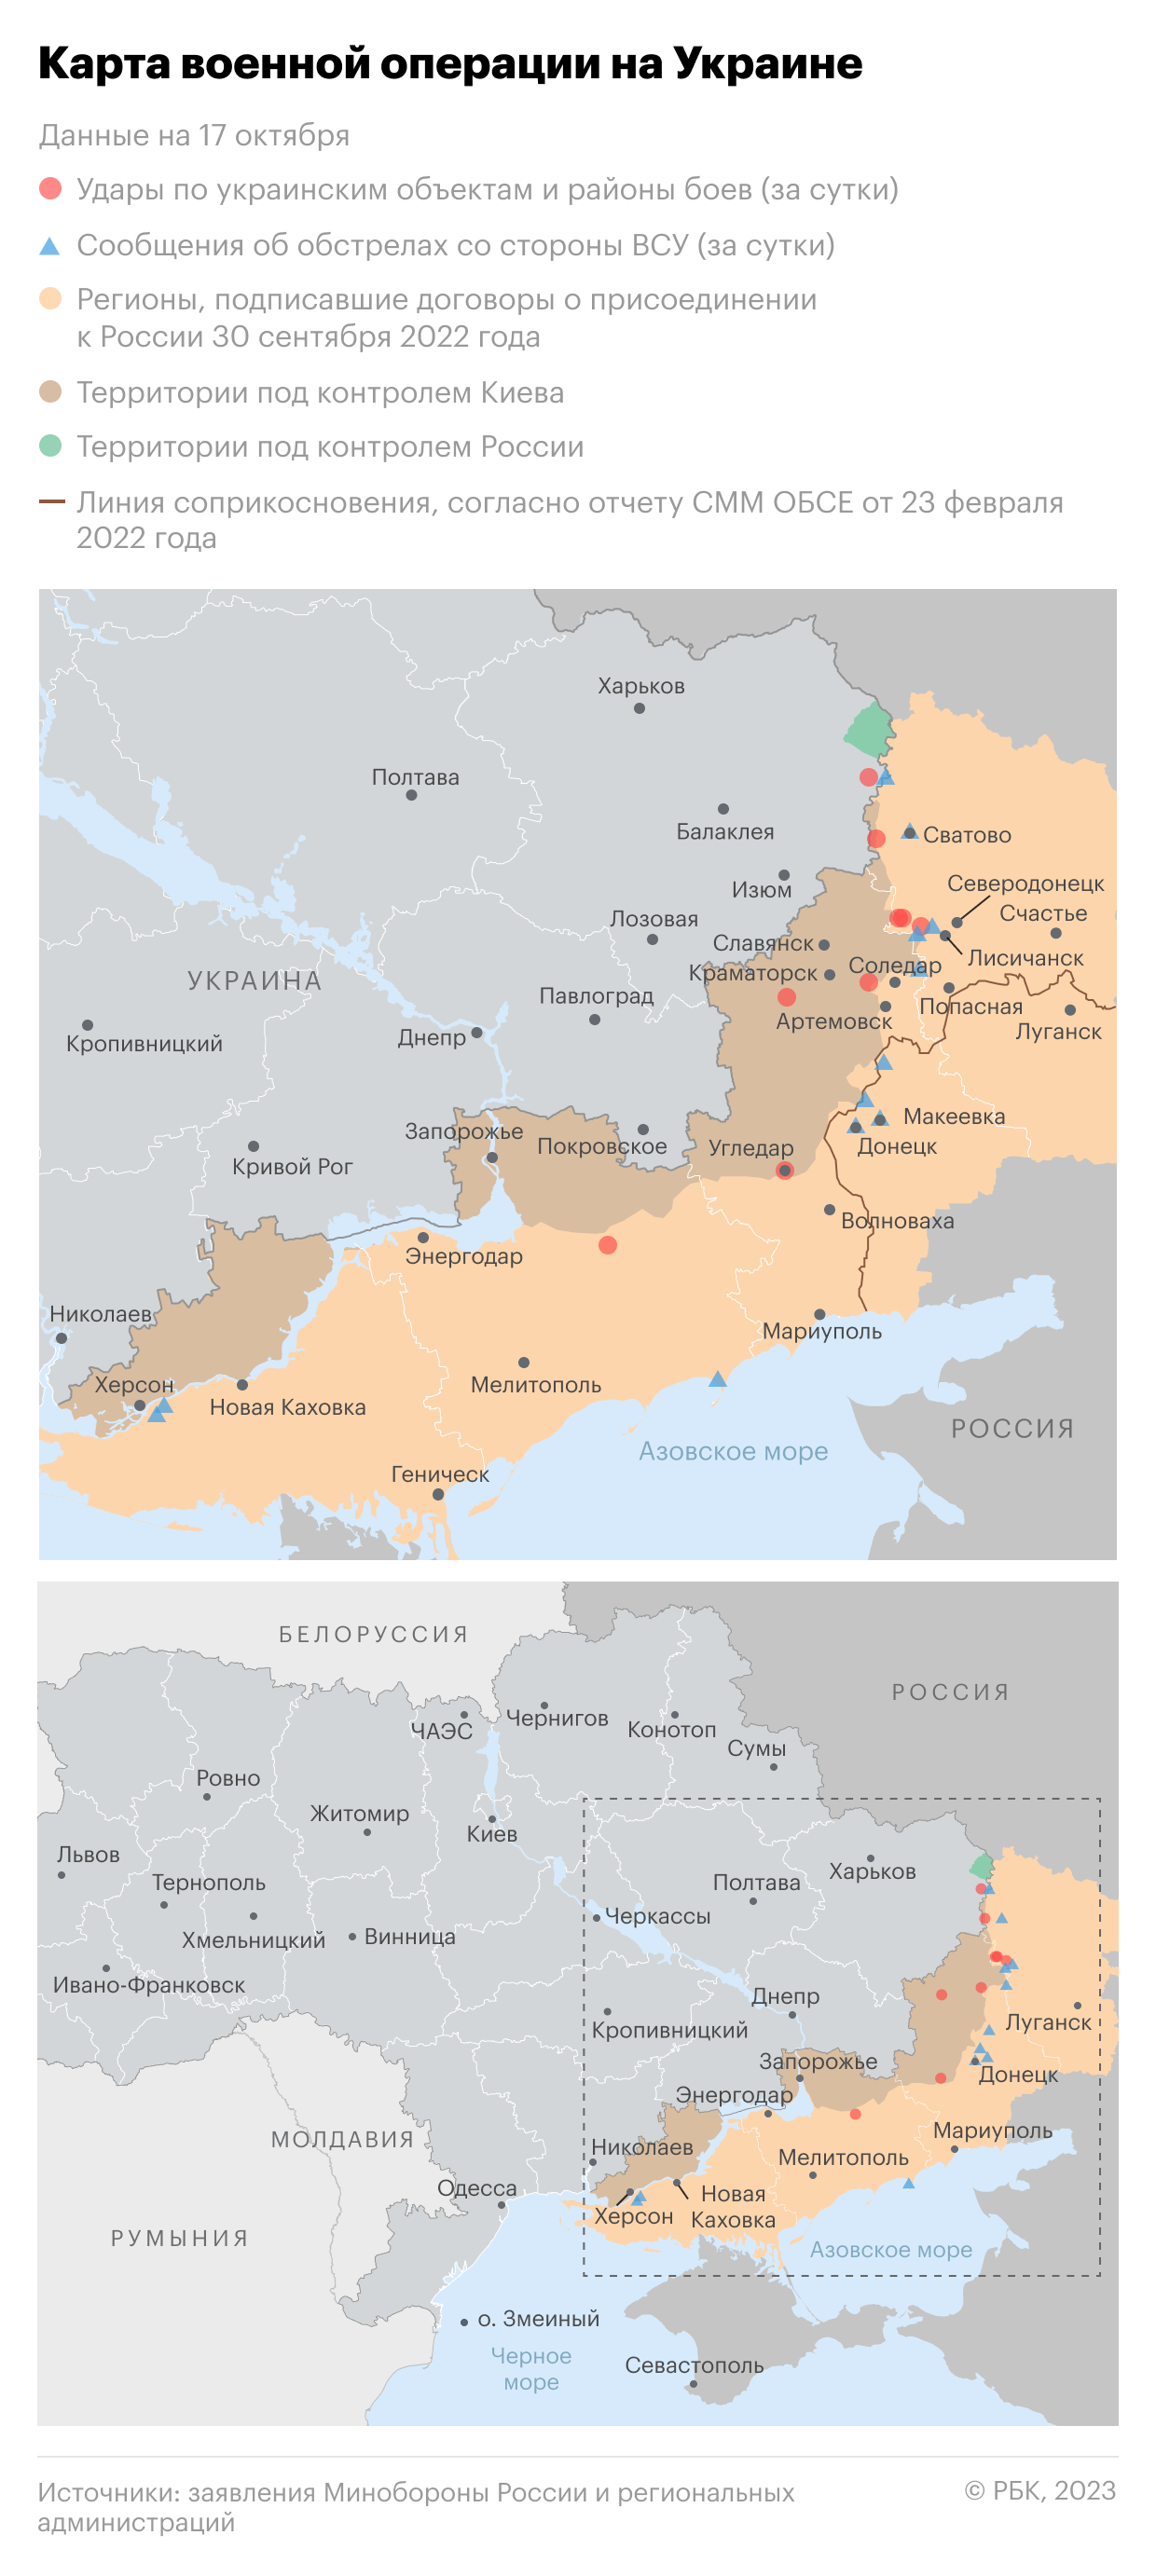 Военная операция на Украине. Карта на 17 октября